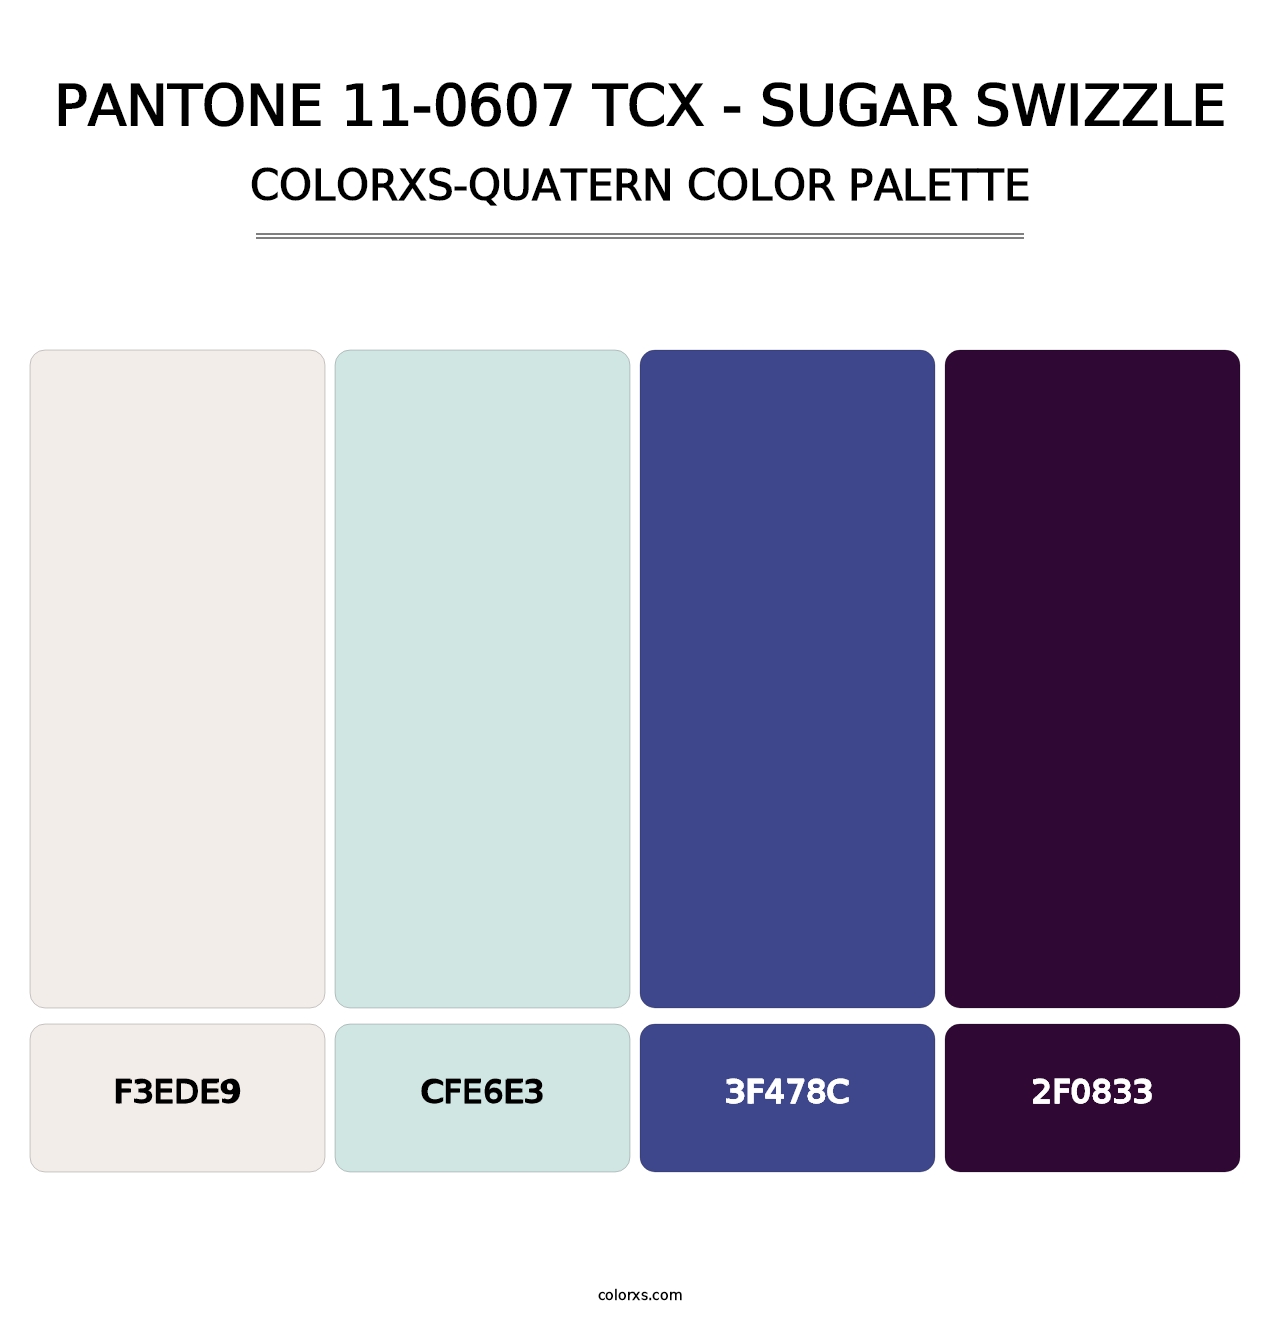 PANTONE 11-0607 TCX - Sugar Swizzle - Colorxs Quatern Palette